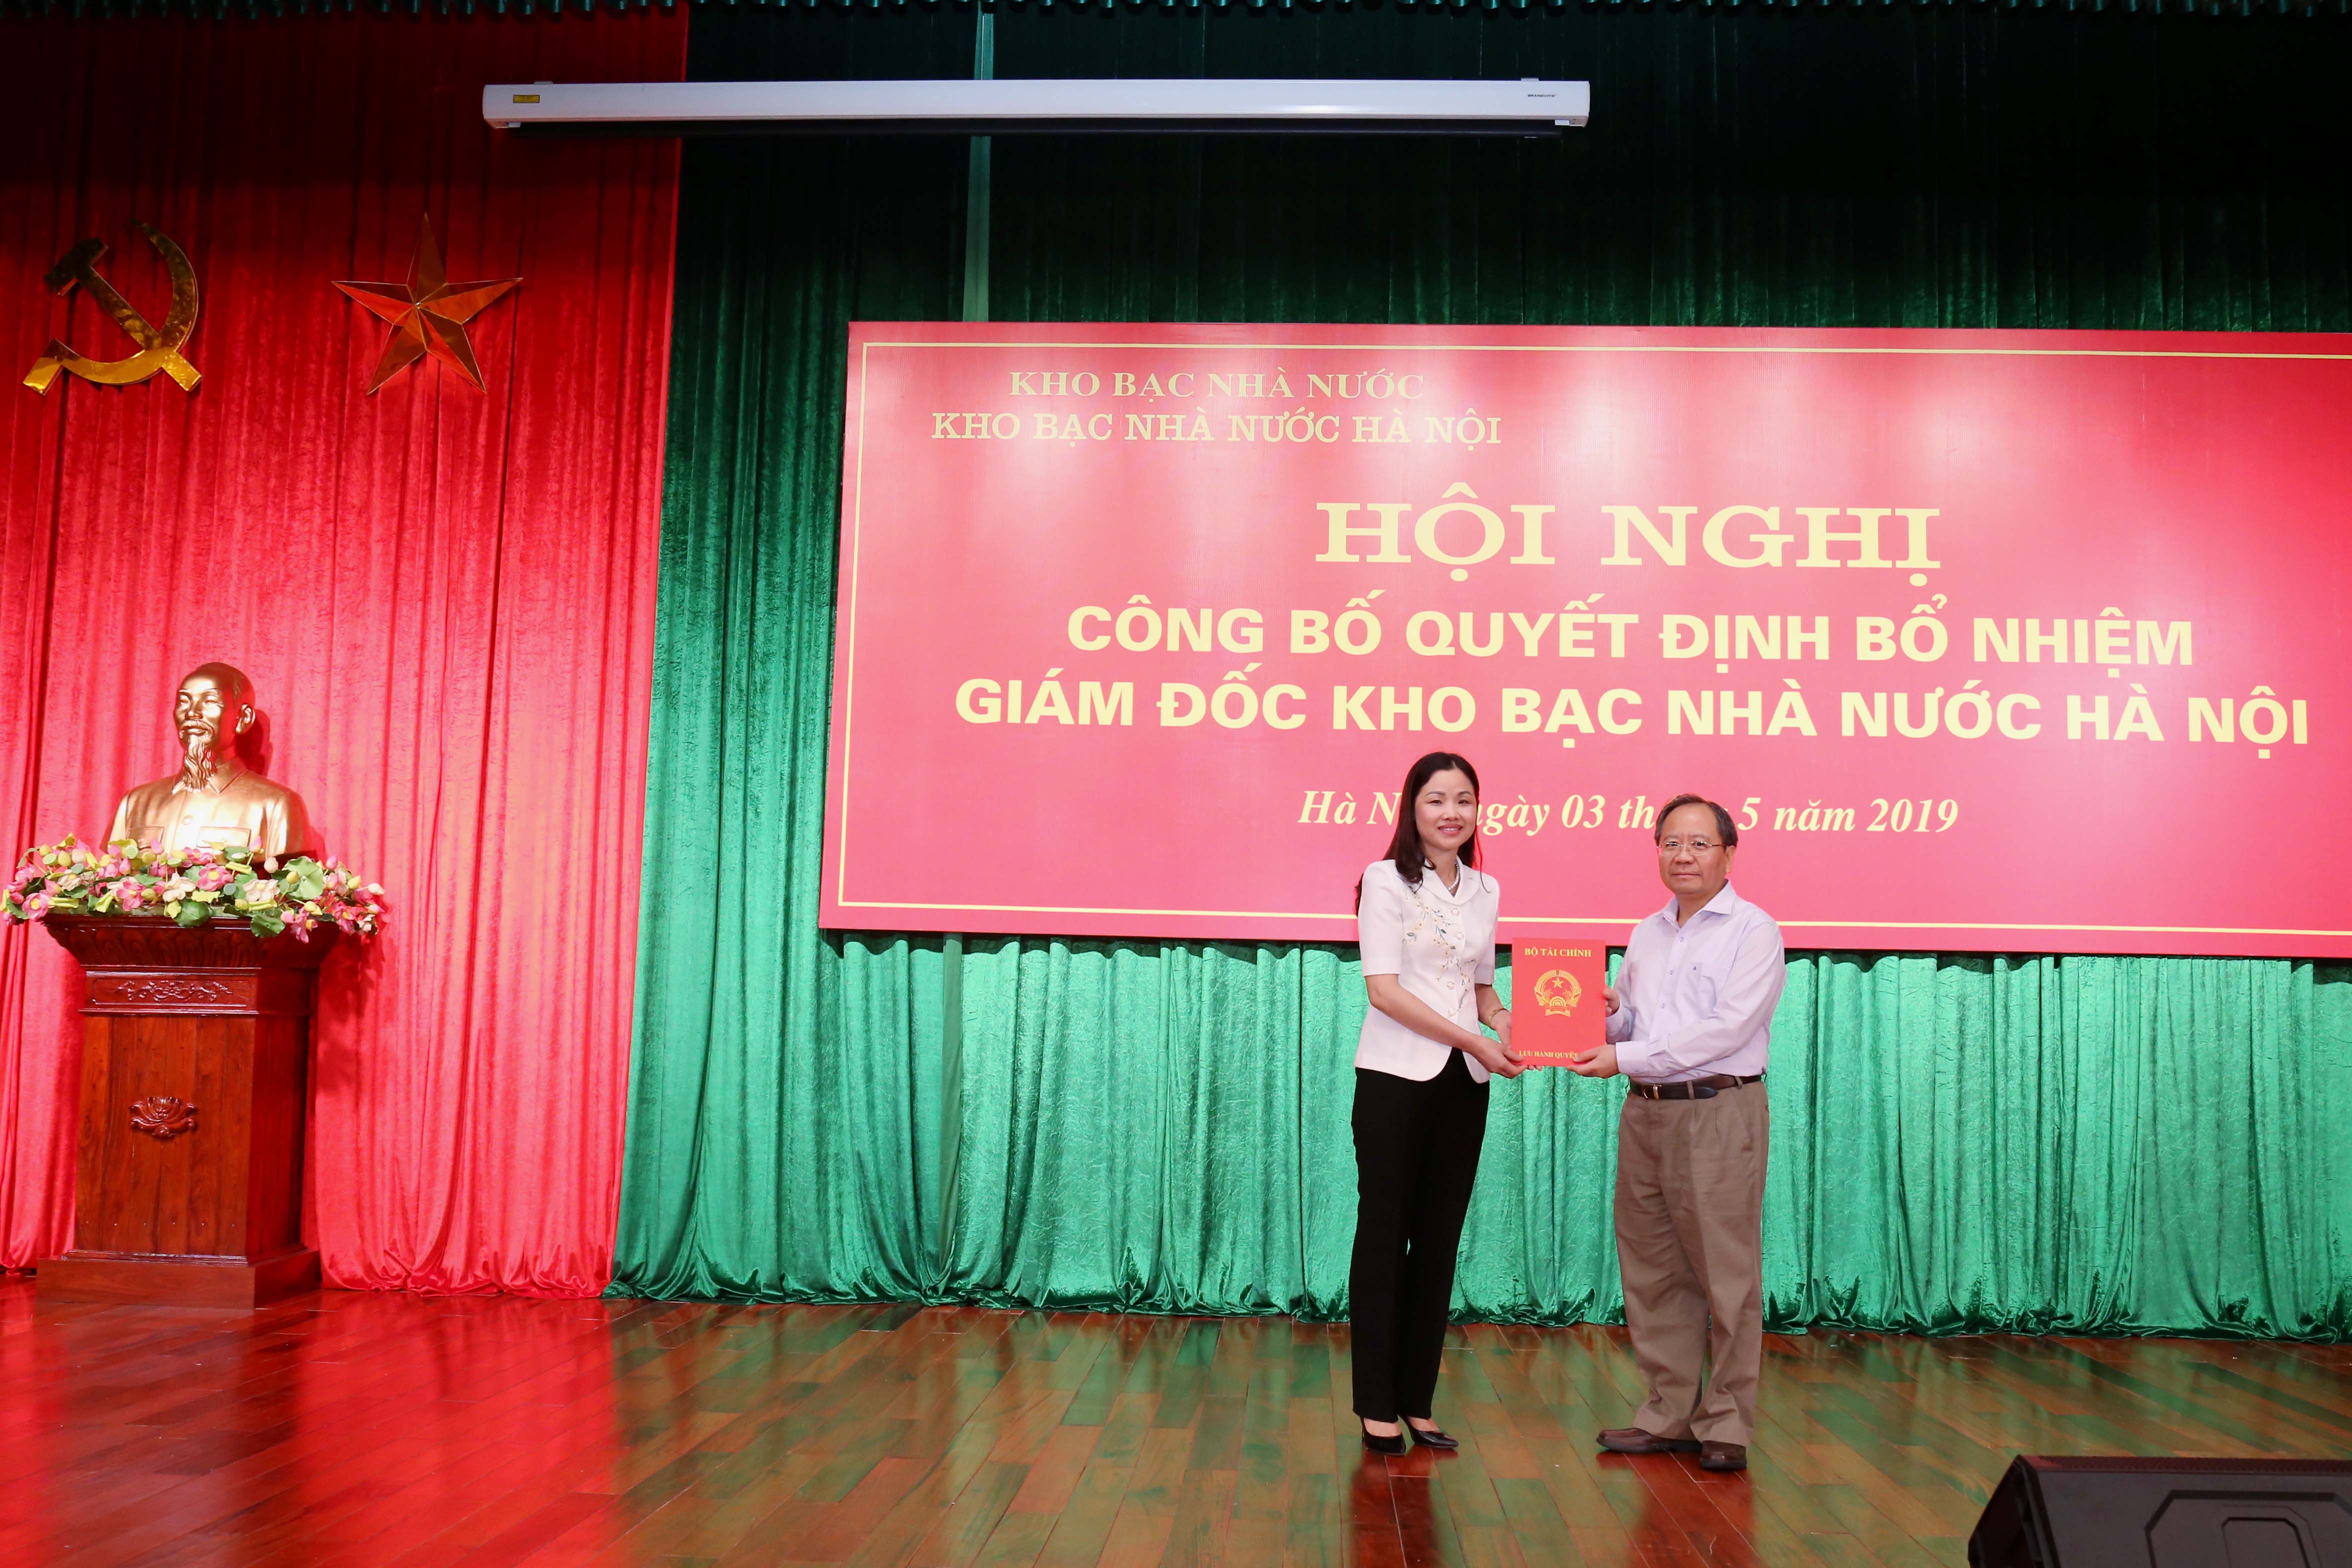 Thứ trưởng Bộ Tài chính Đỗ Hoàng Anh Tuấn trao quyết định cho bà Nguyễn Thị Thanh Hương​